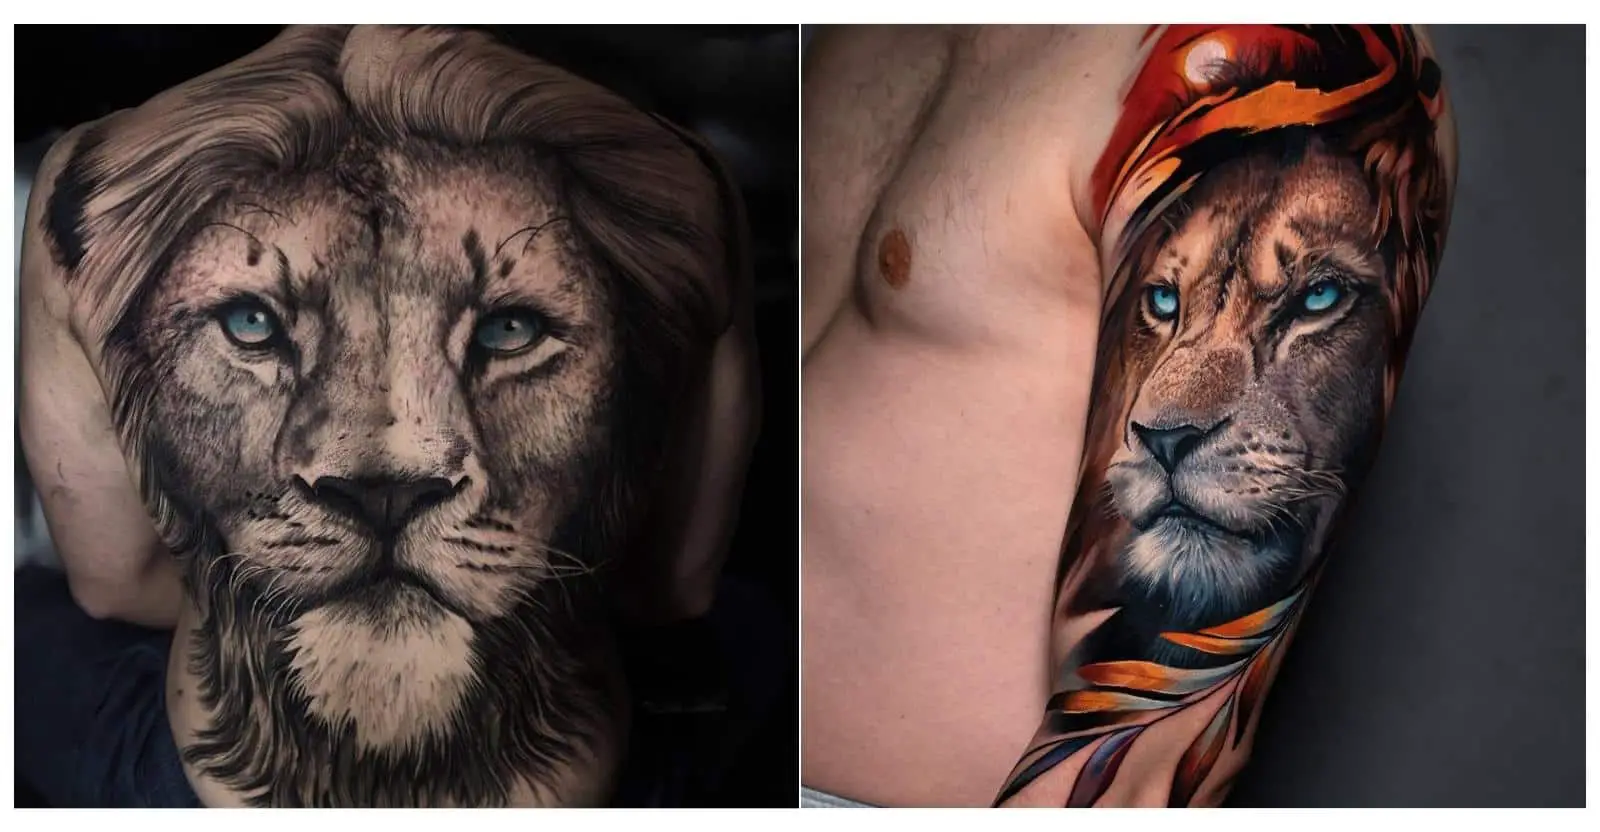 12+ Scratch Mark Tattoos - Tiger Tattoo Designs - PetPress